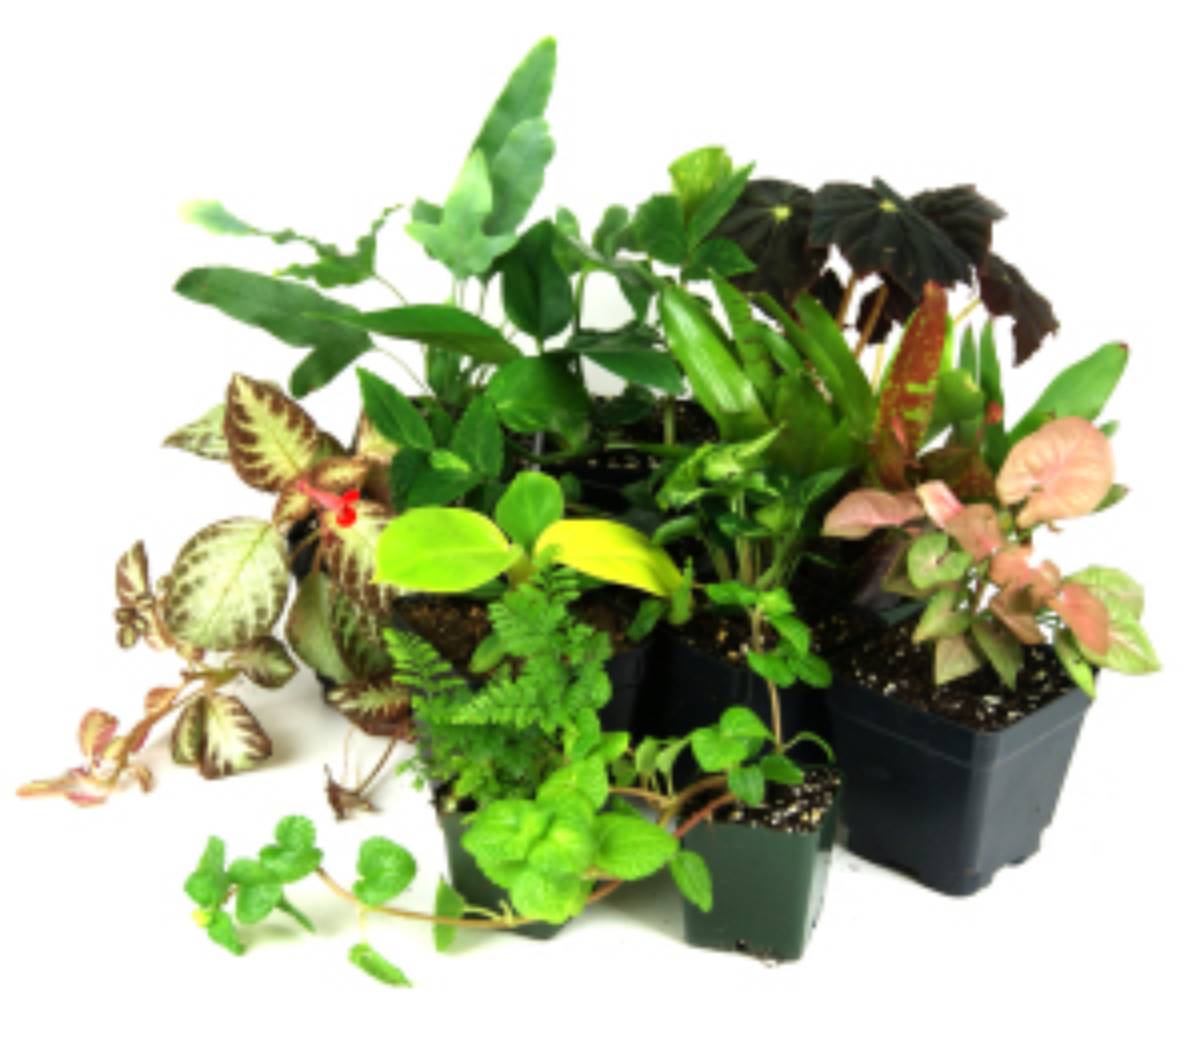 Examples of terrarium plants